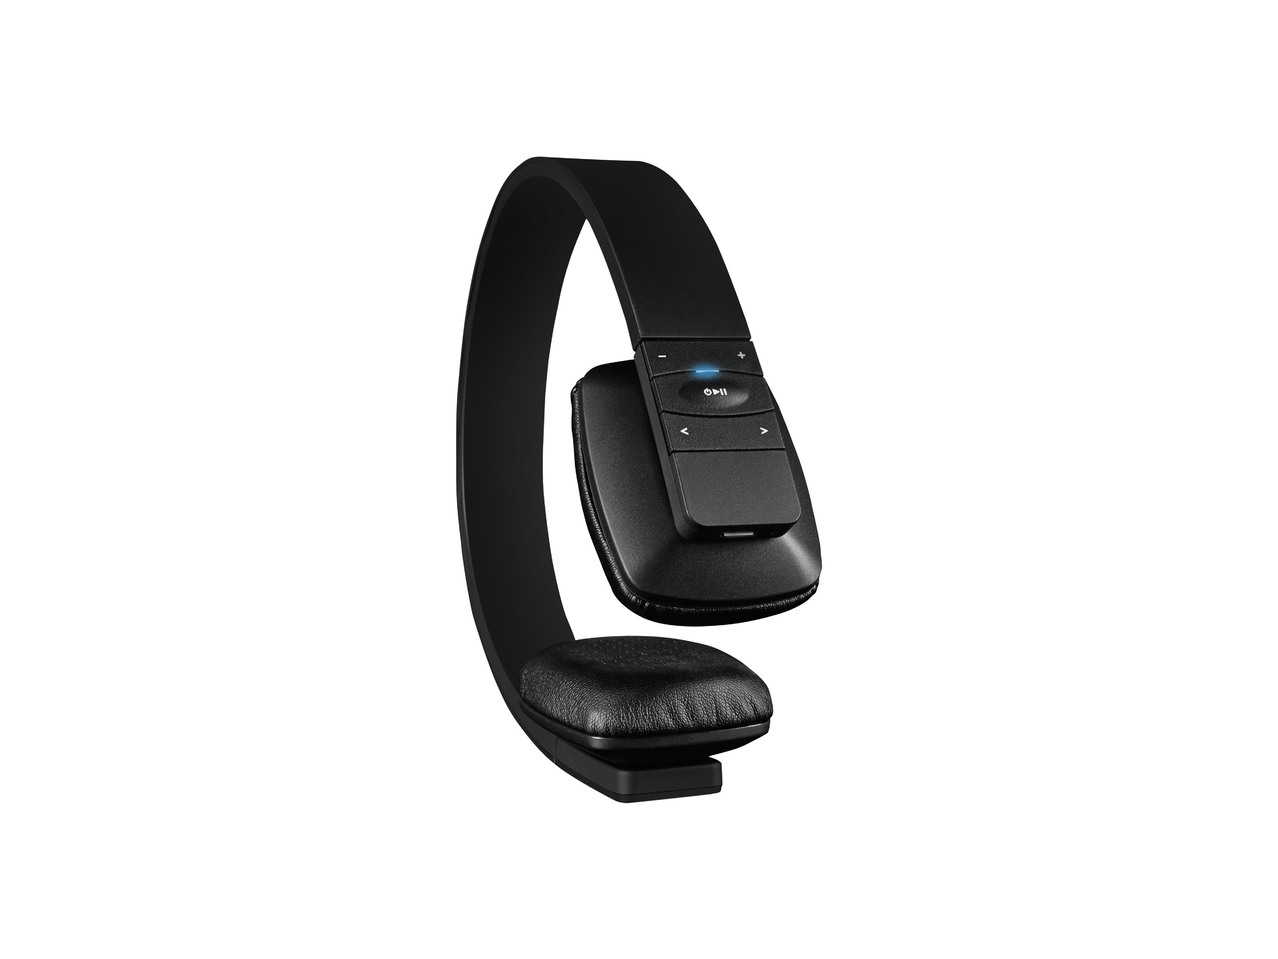 Bluetooth bezdrátová sluchátka Silvercrest SBTH 4.0 A1